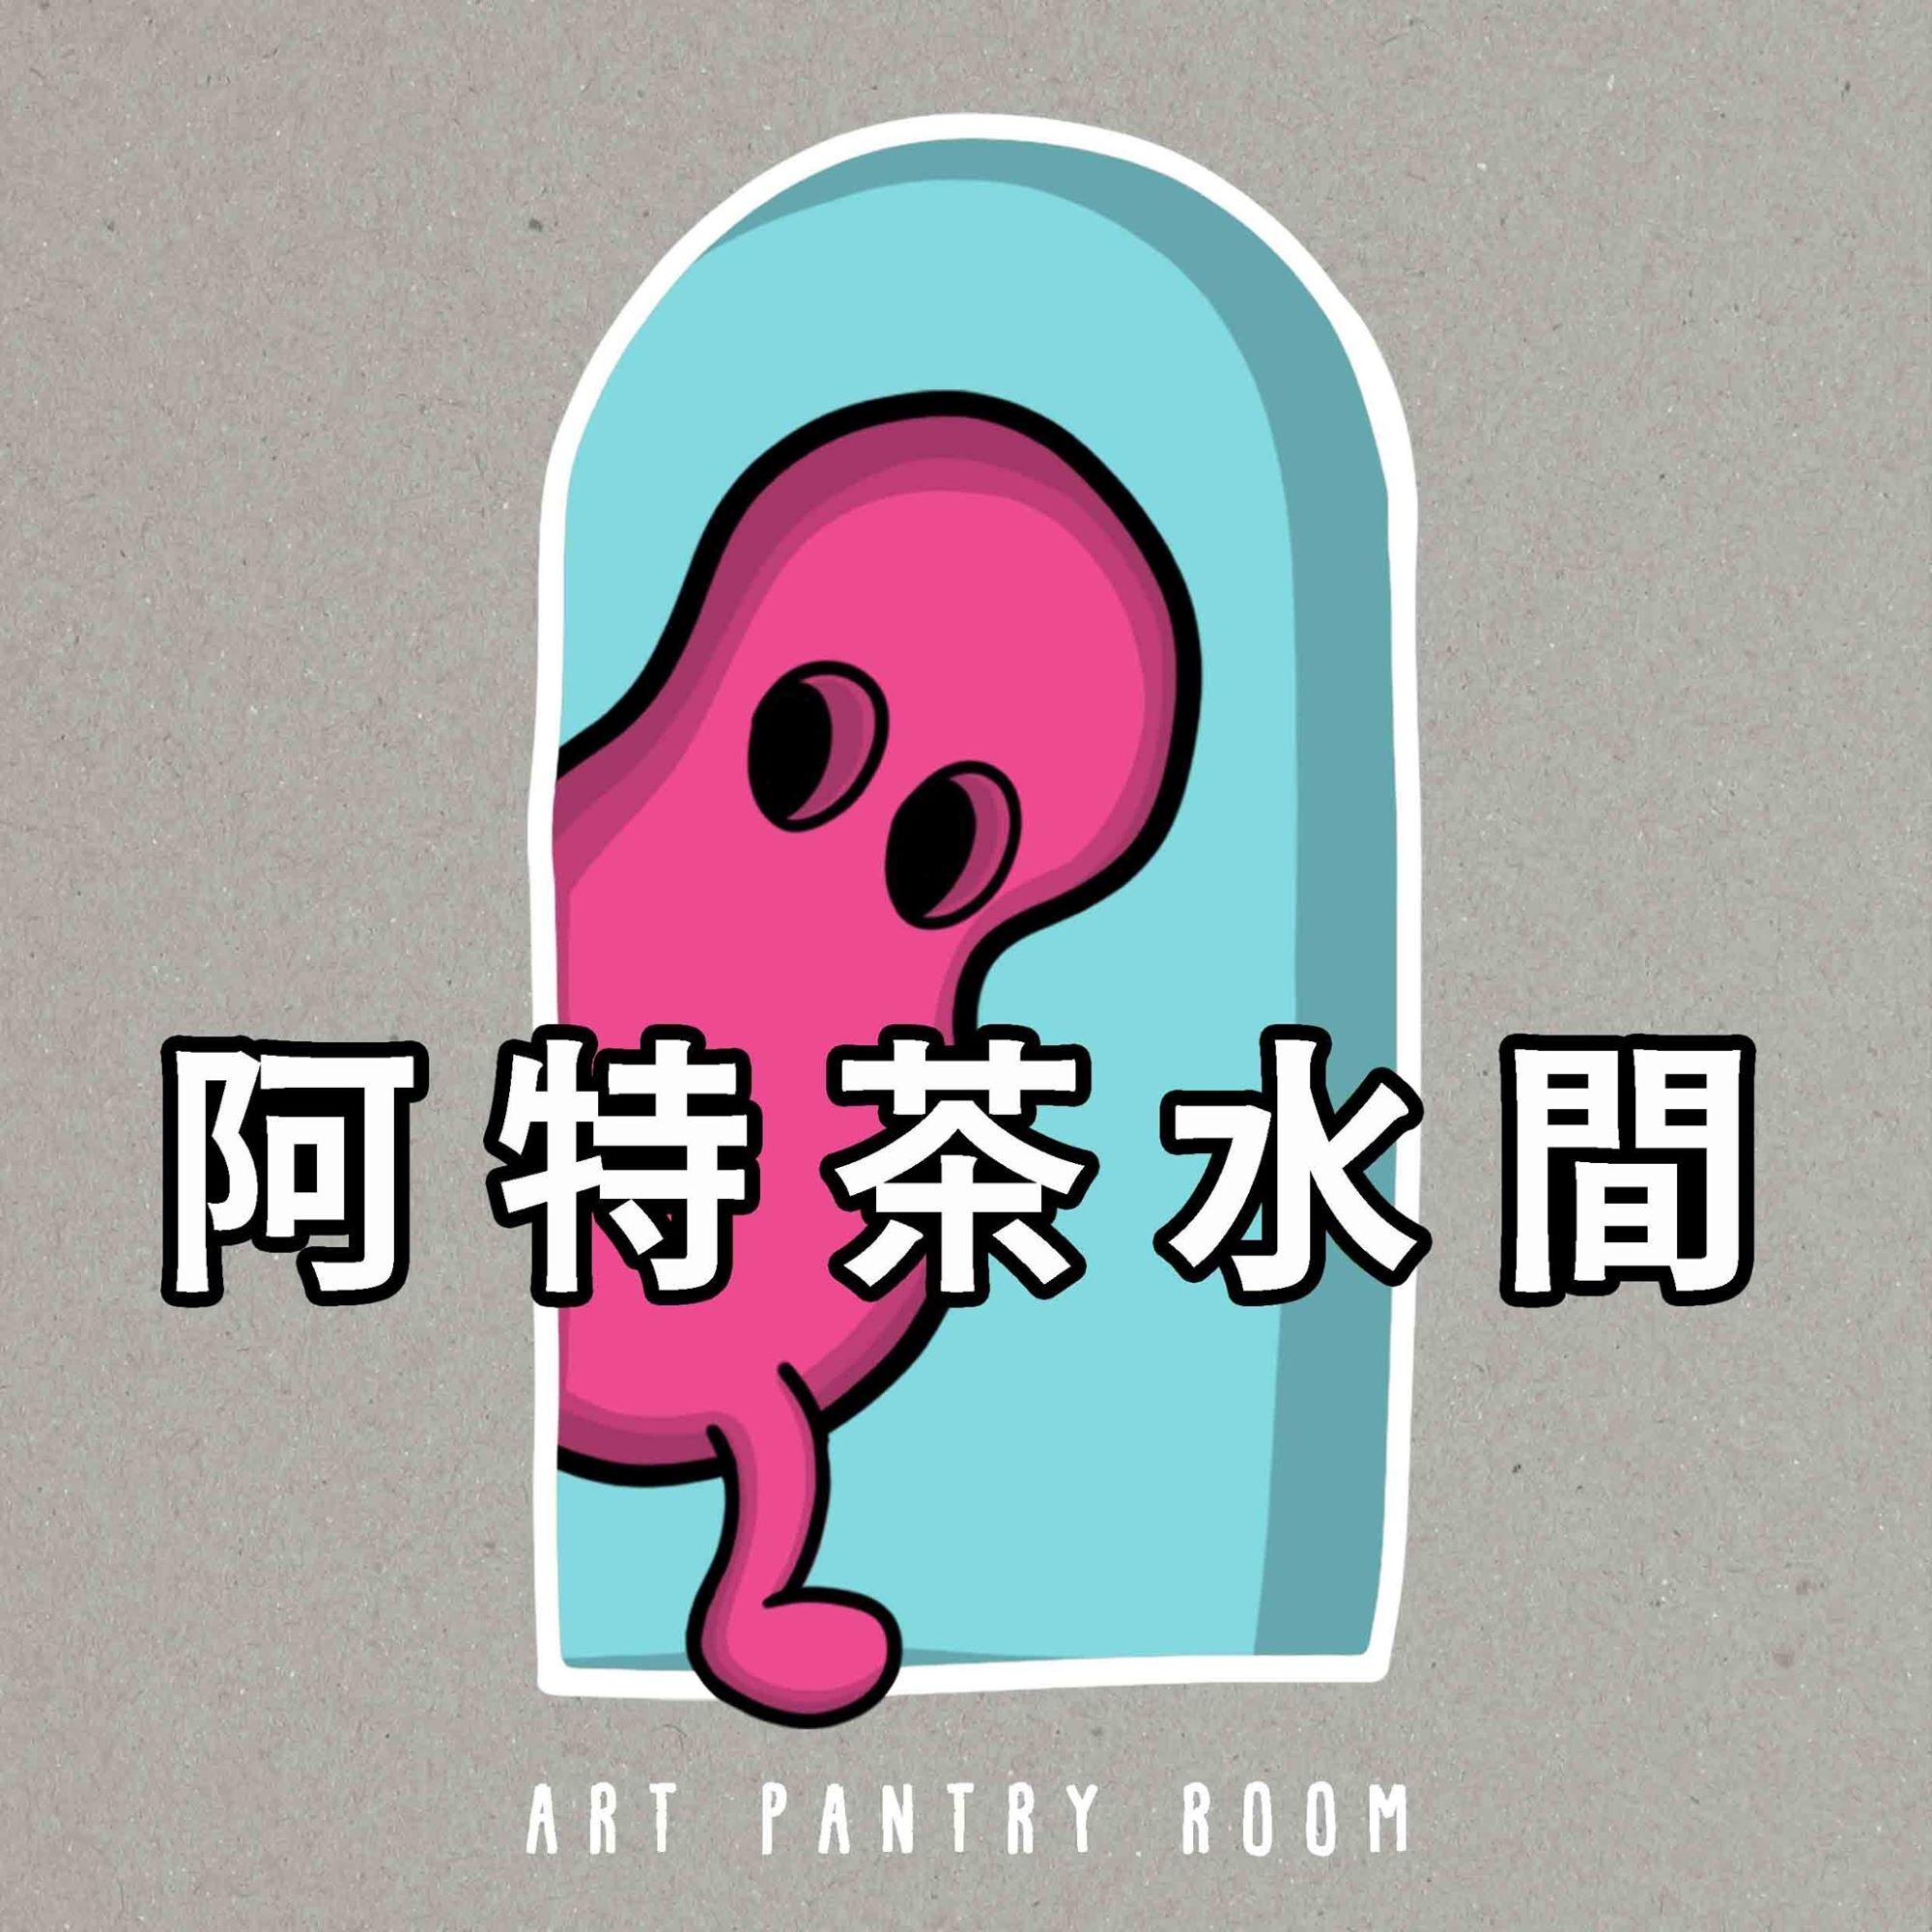 藝術類線上廣播節目：《阿特茶水間 Art Pantry Room 》創辦人及主持人:陳俐穎/美術系七年一貫學士&碩士班